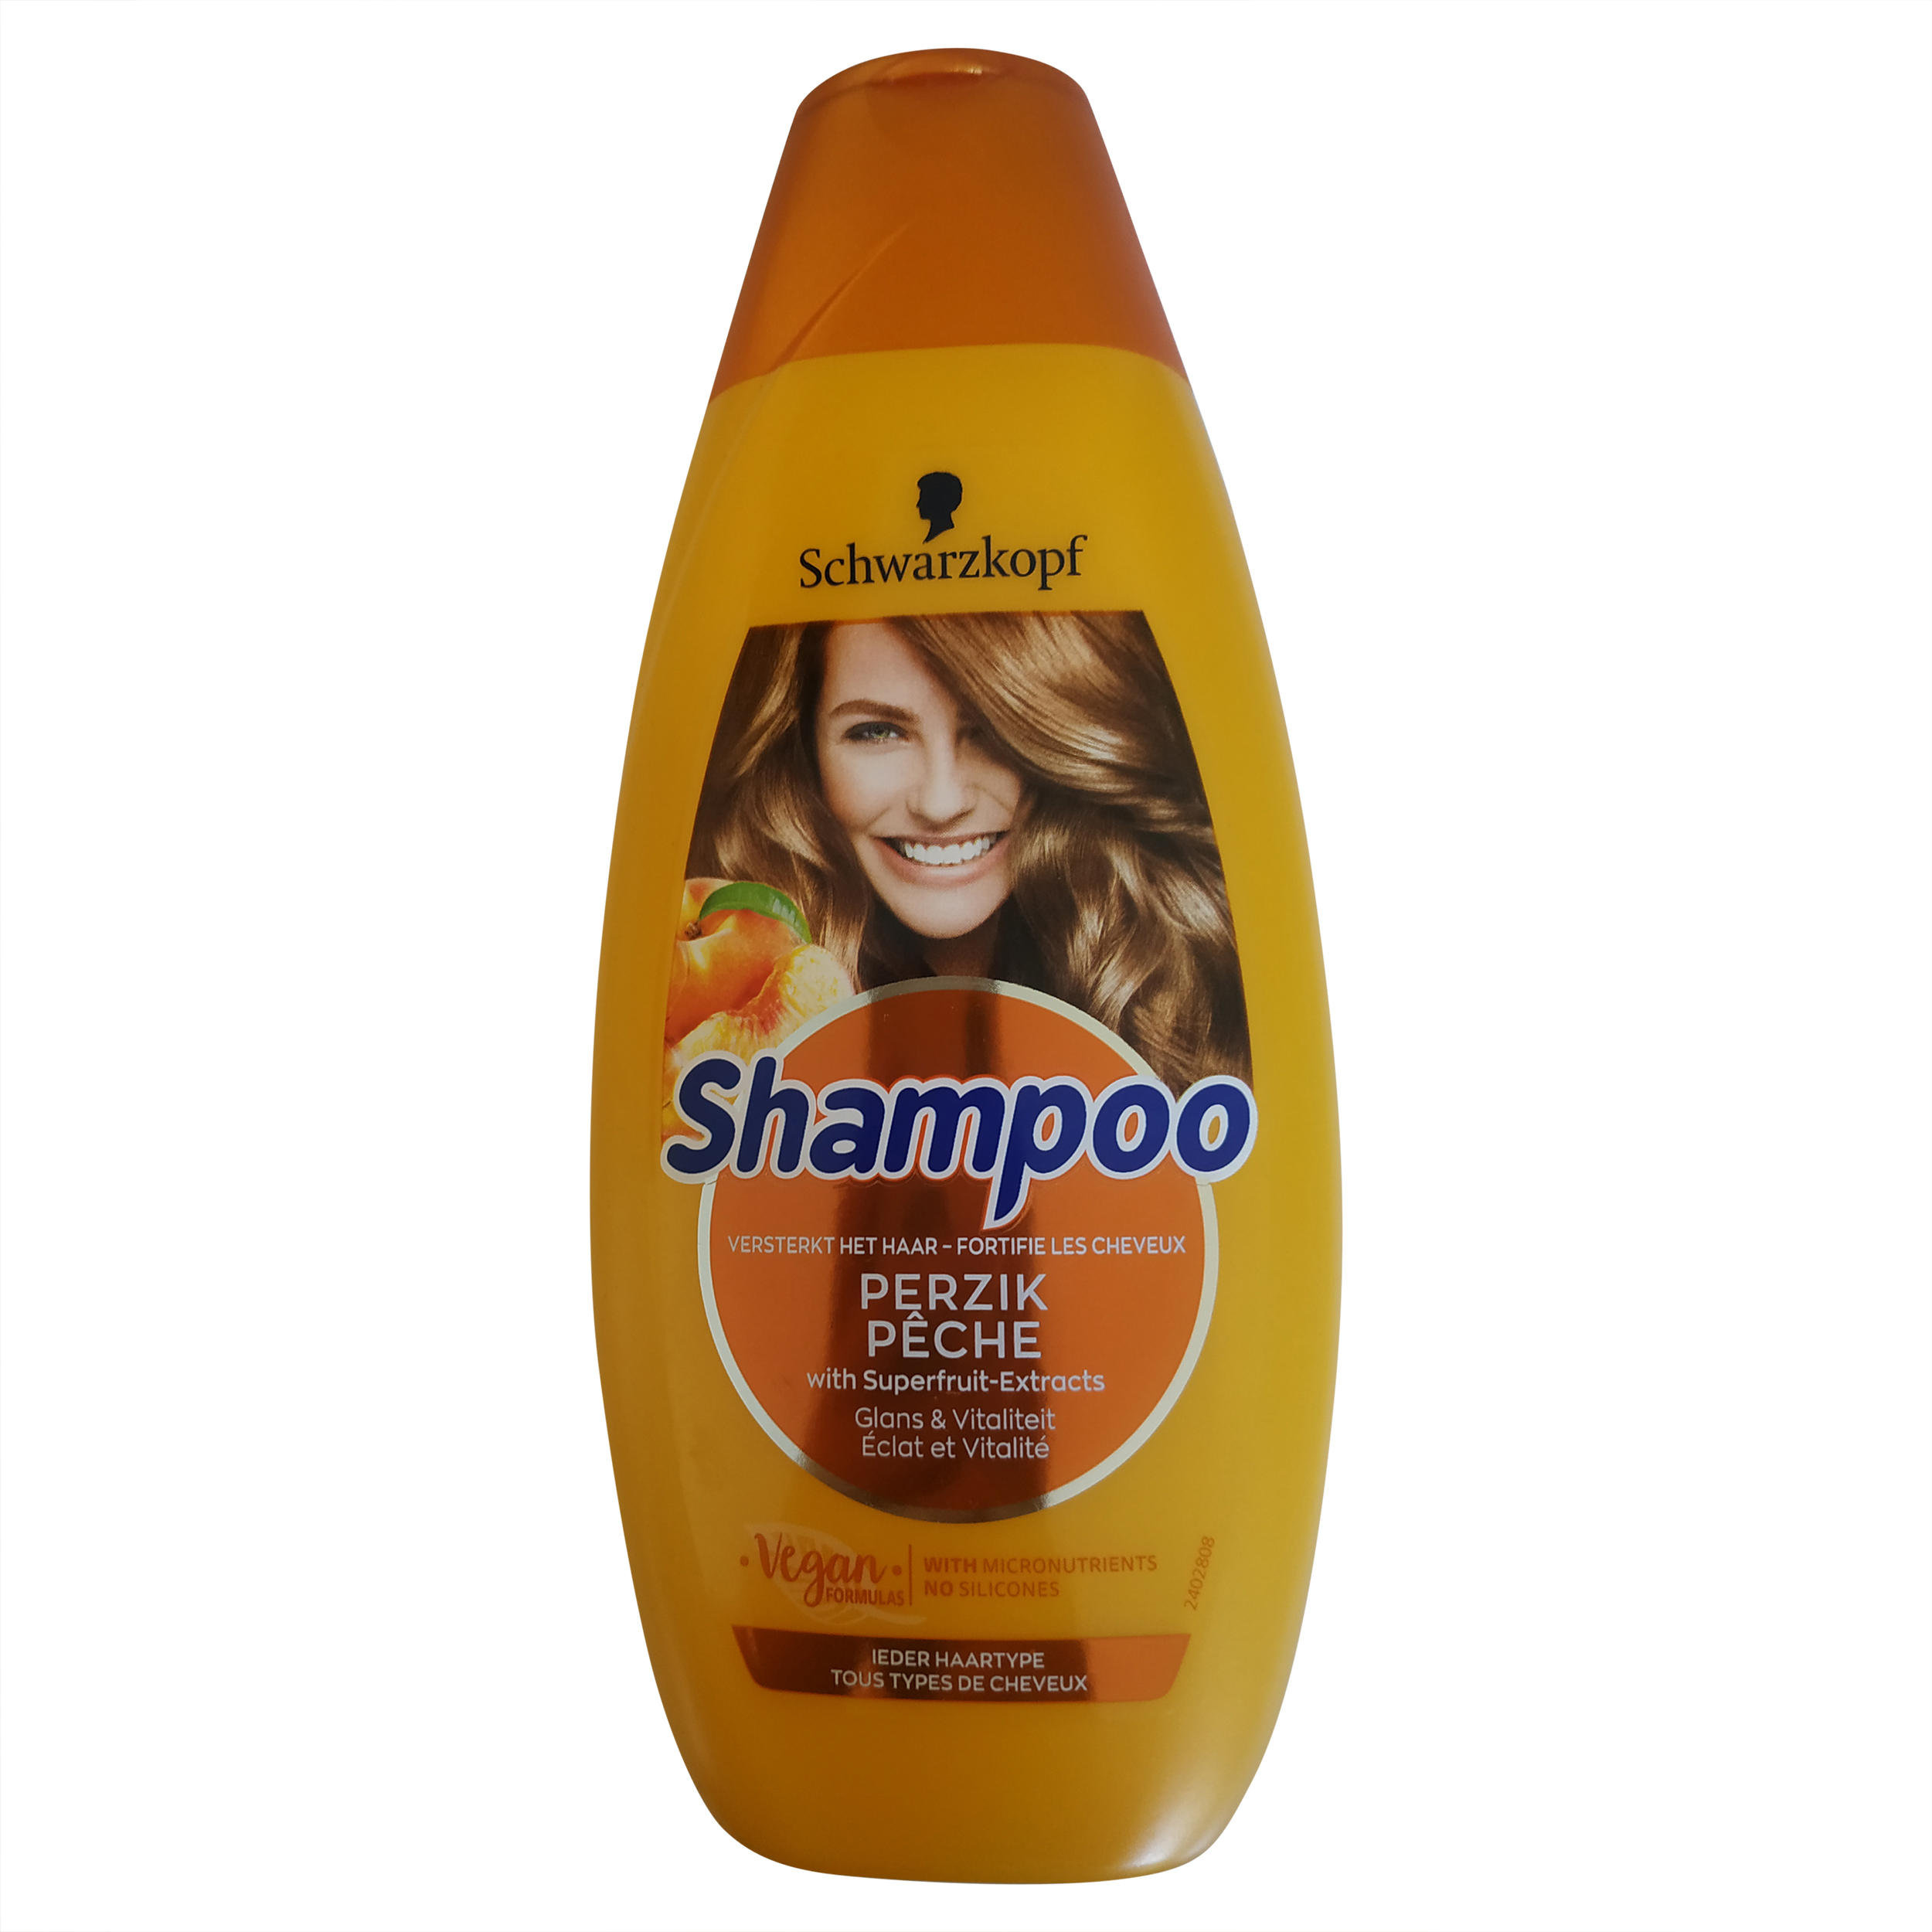 Shampoo | Schwarzkopf Hair Products | Schwarzkopf Shampoo Peach | Shampoo Schwarzkopf | 14.1 Ounce Total Weight – World of Europe